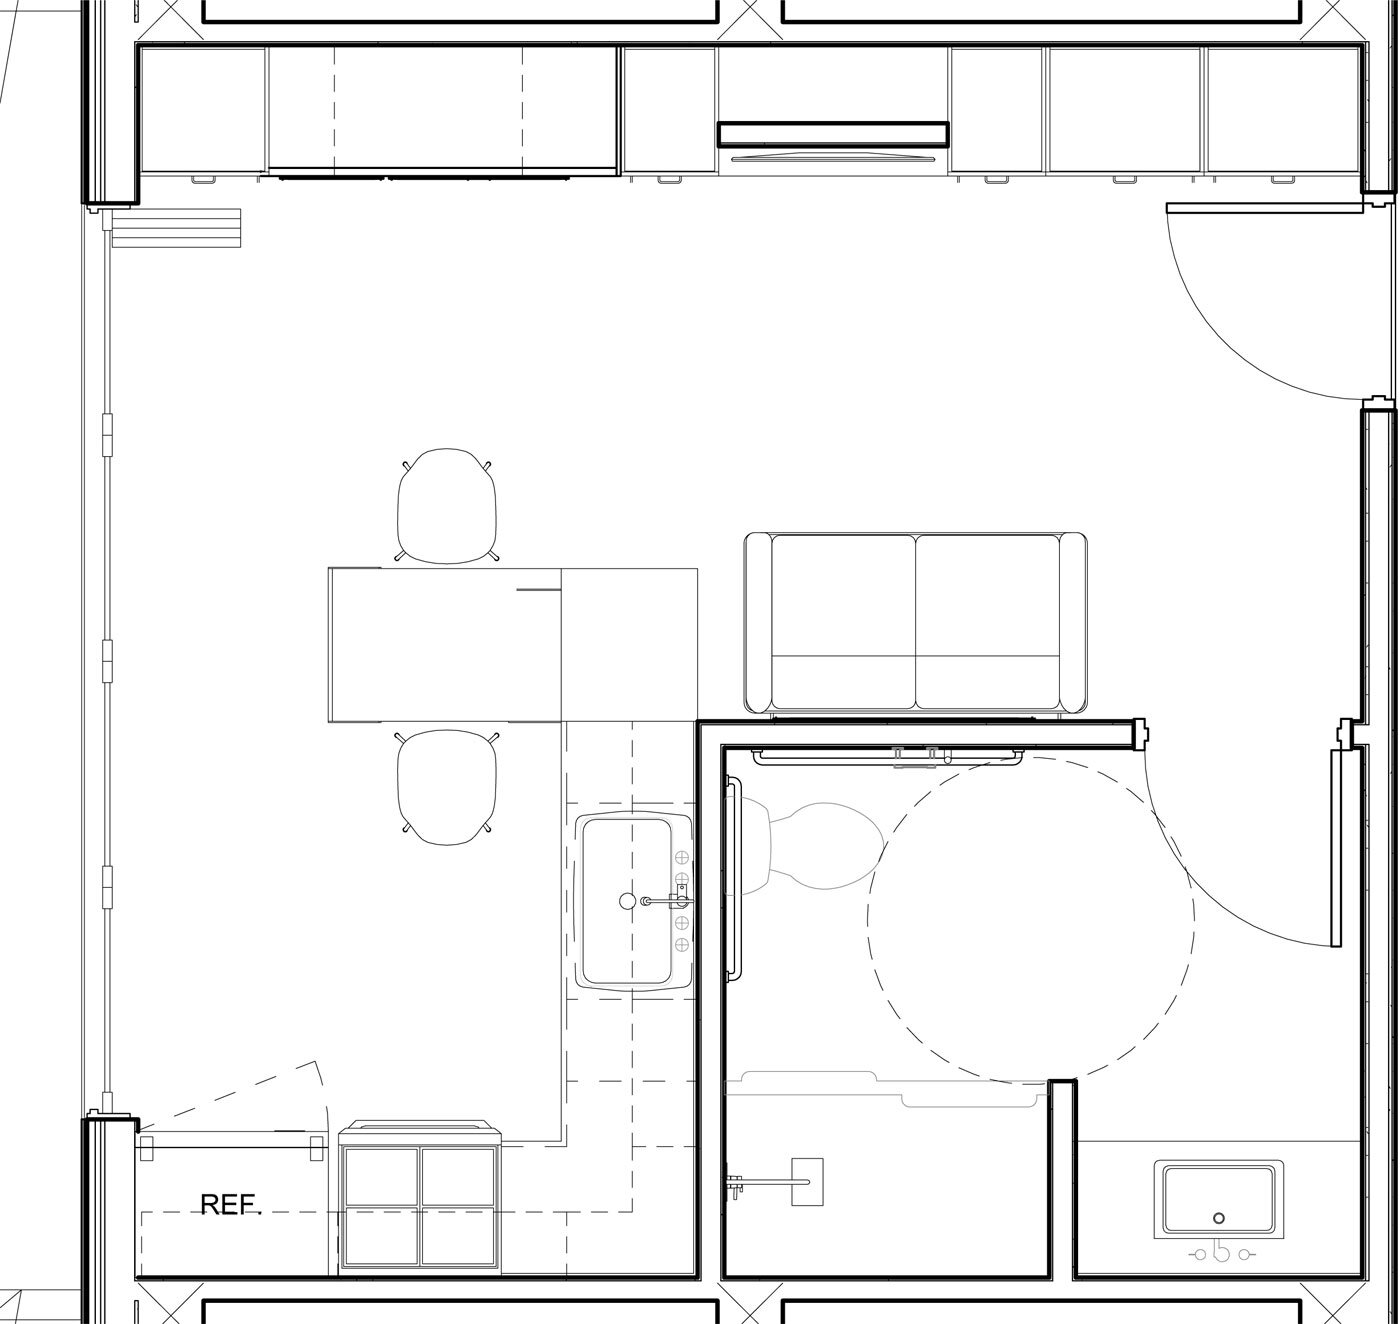 NYC-Micro-Dwellings-Enlarged-Unit-Plan.jpg